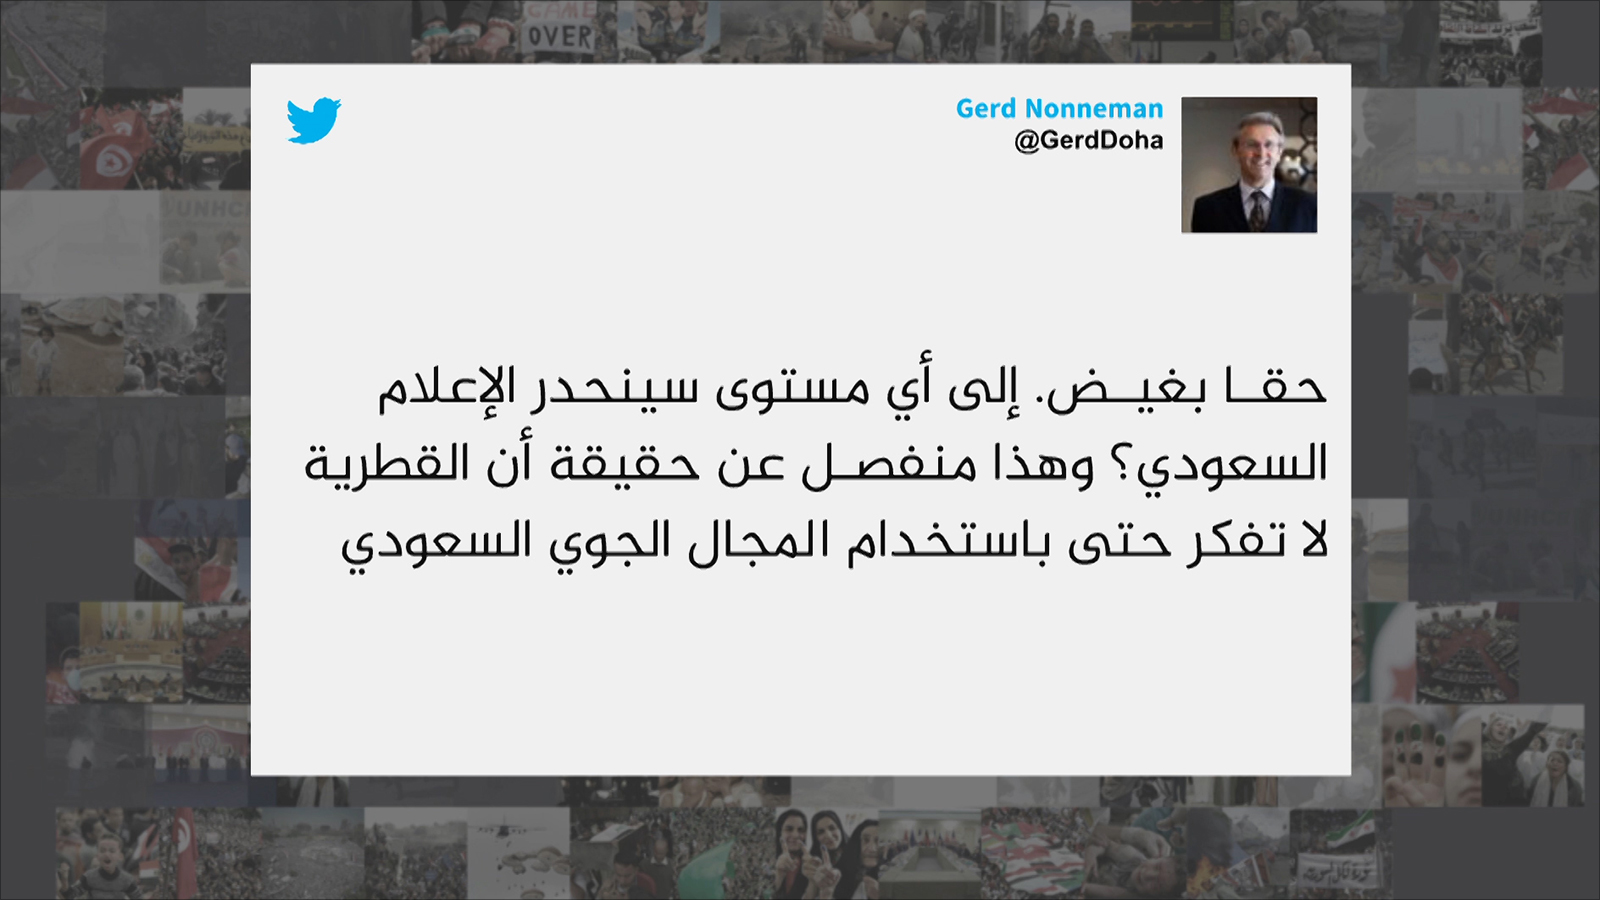 واحدة من تغريدات كثيرة نددت بتقرير قناة العربية الذي تضمن التحريض على إسقاط طائرات الركاب القطرية